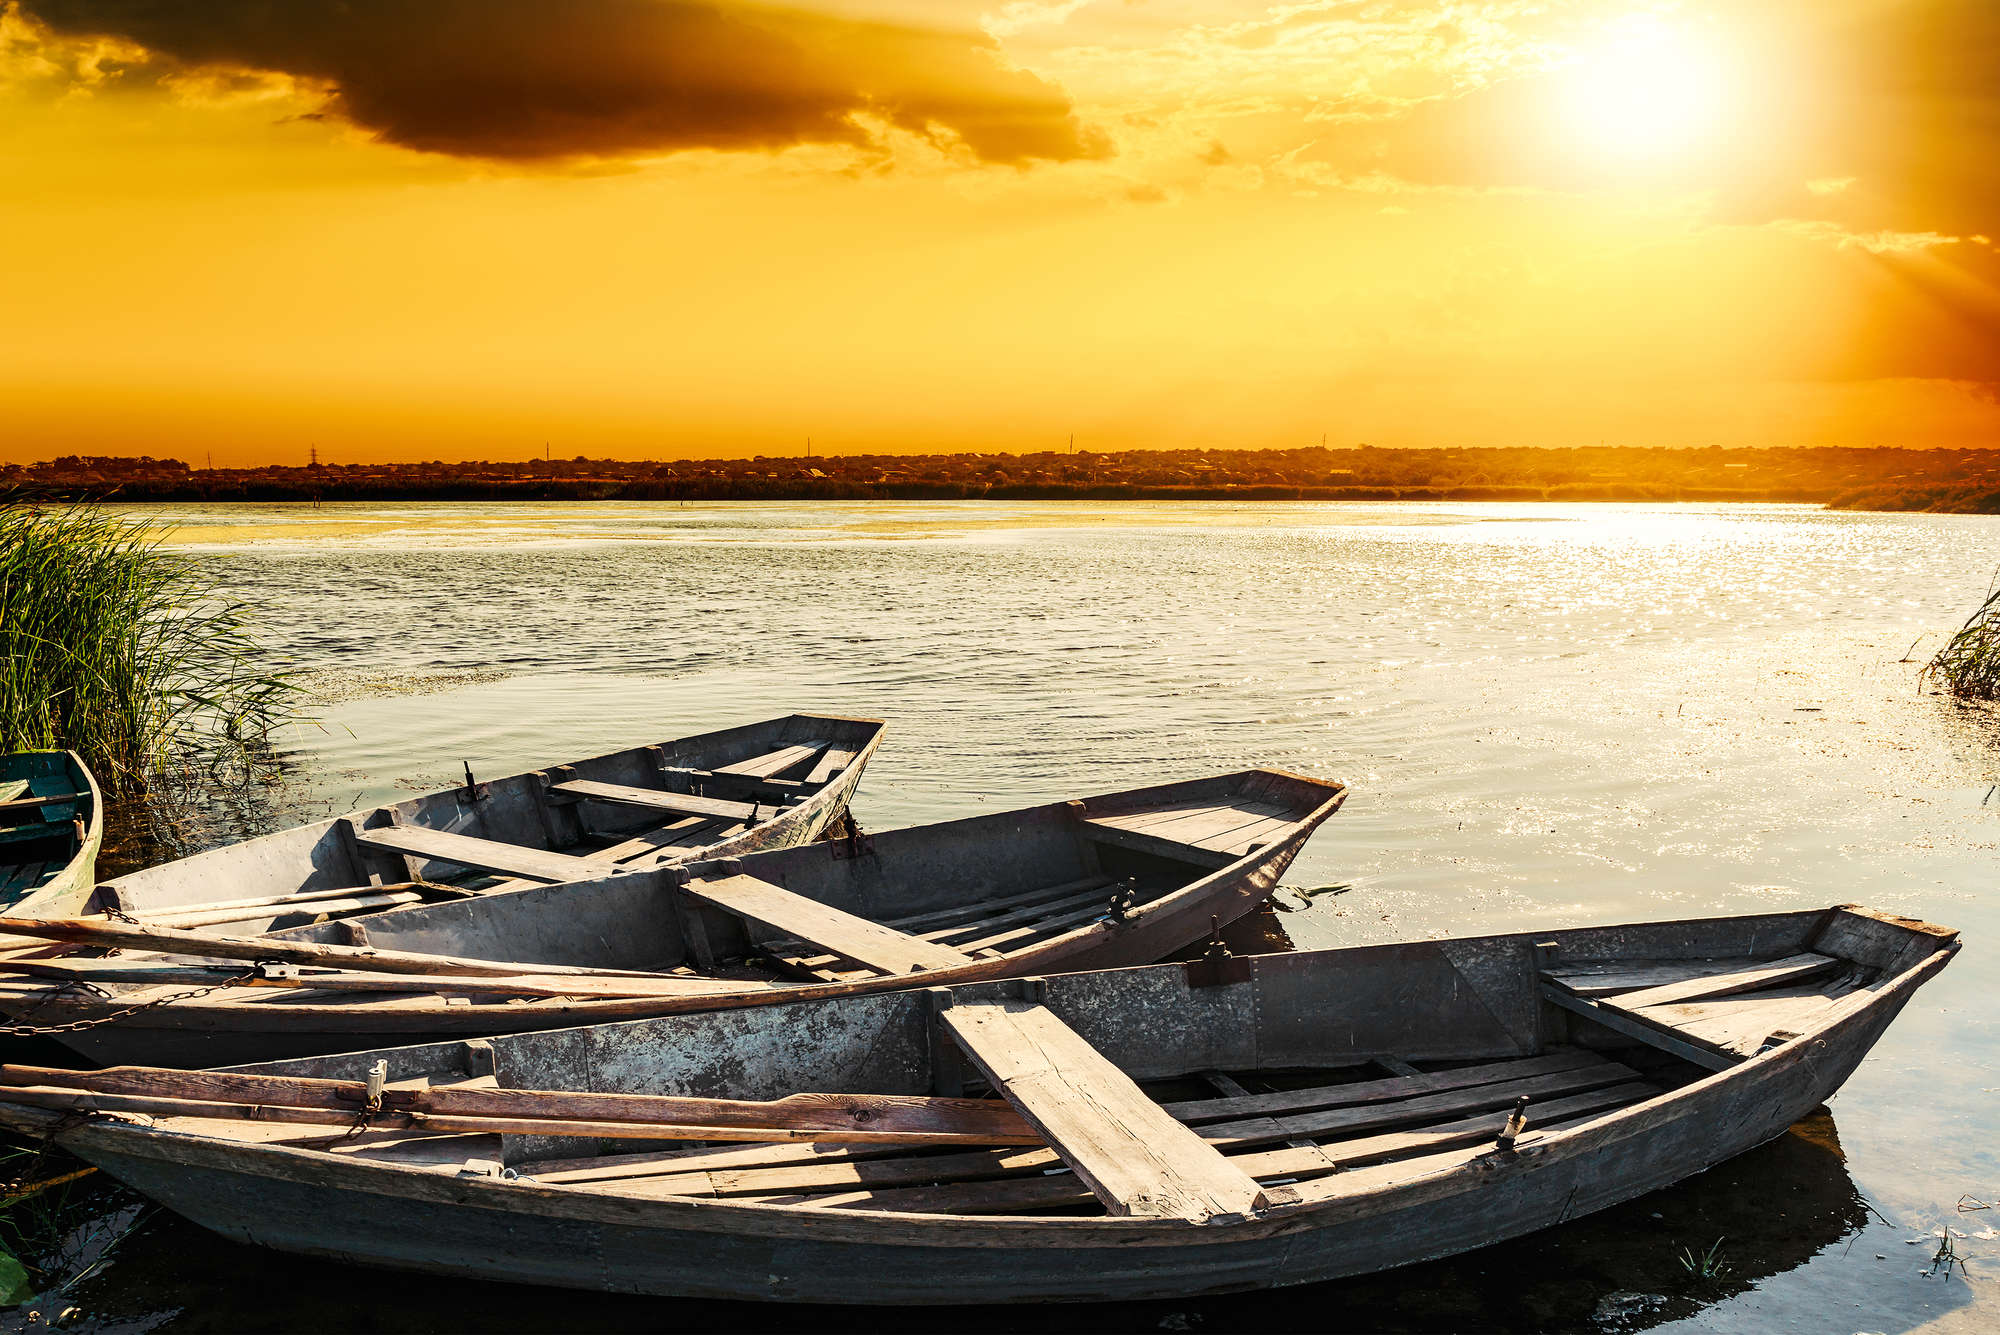             Natuurbehang houten boten op het meer op parelmoer glad vlies
        